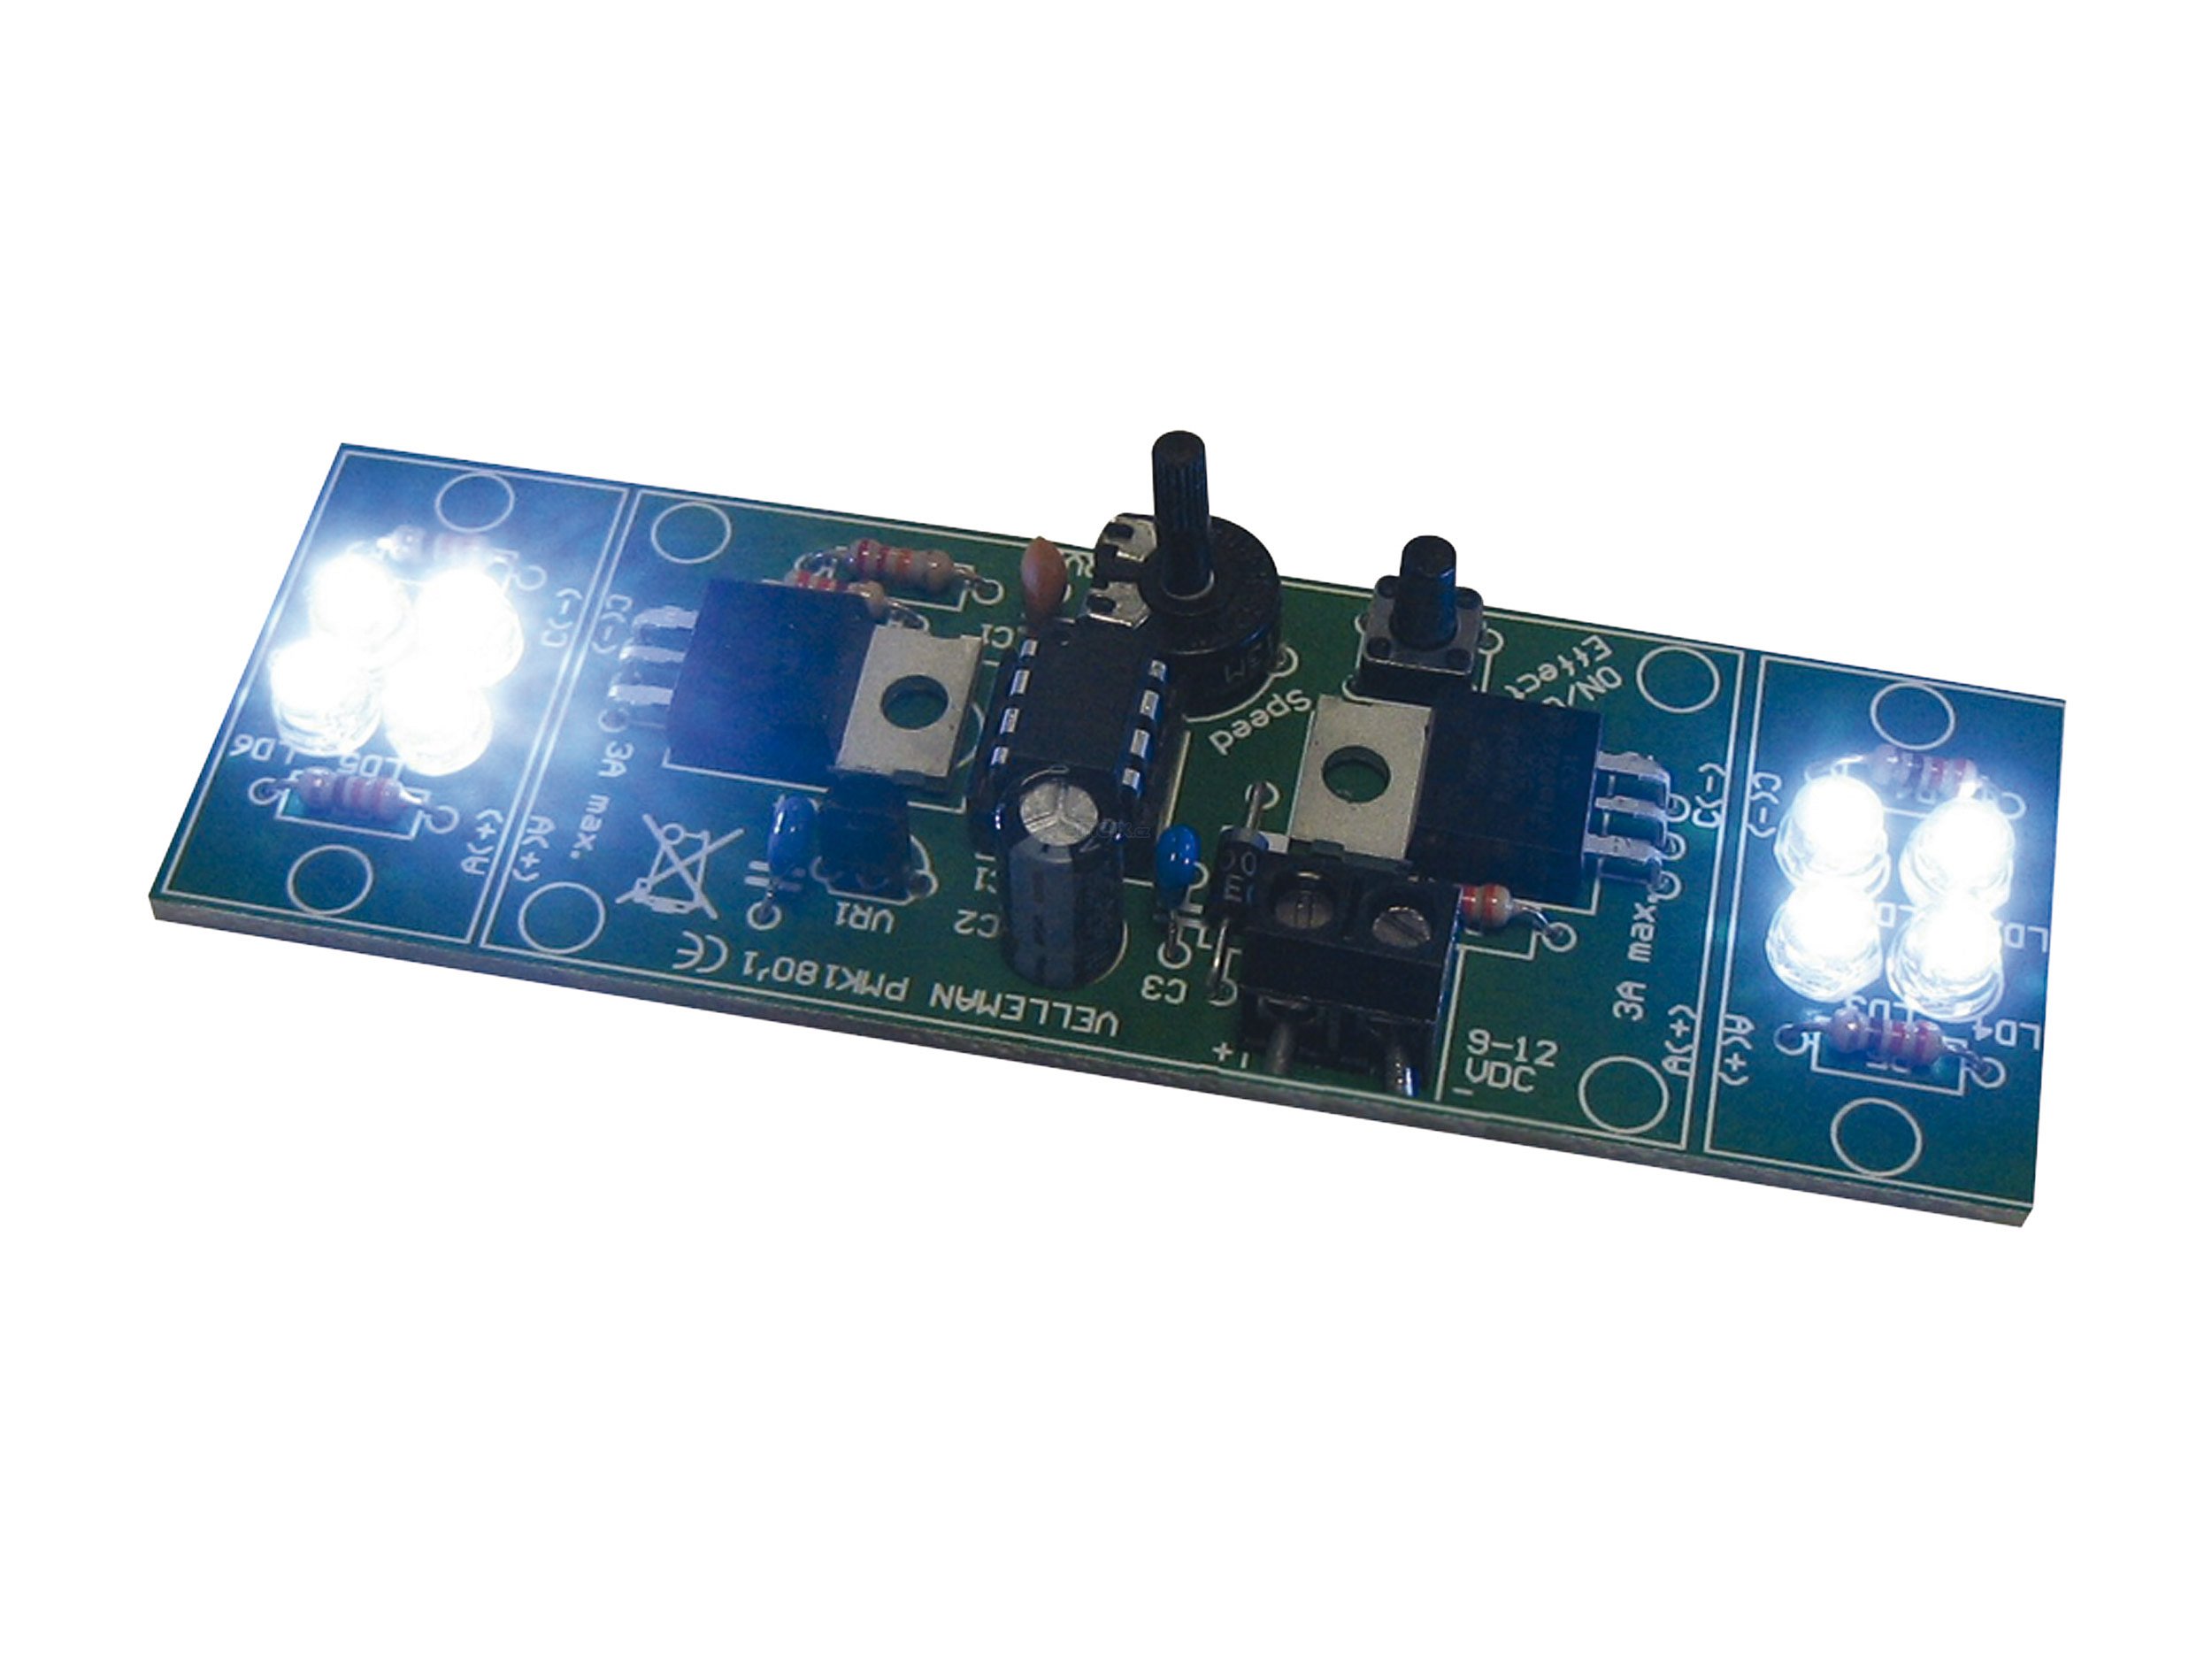 Stavebnice - Výkonný 2-kanálový LED blikač MK180 (MK180)